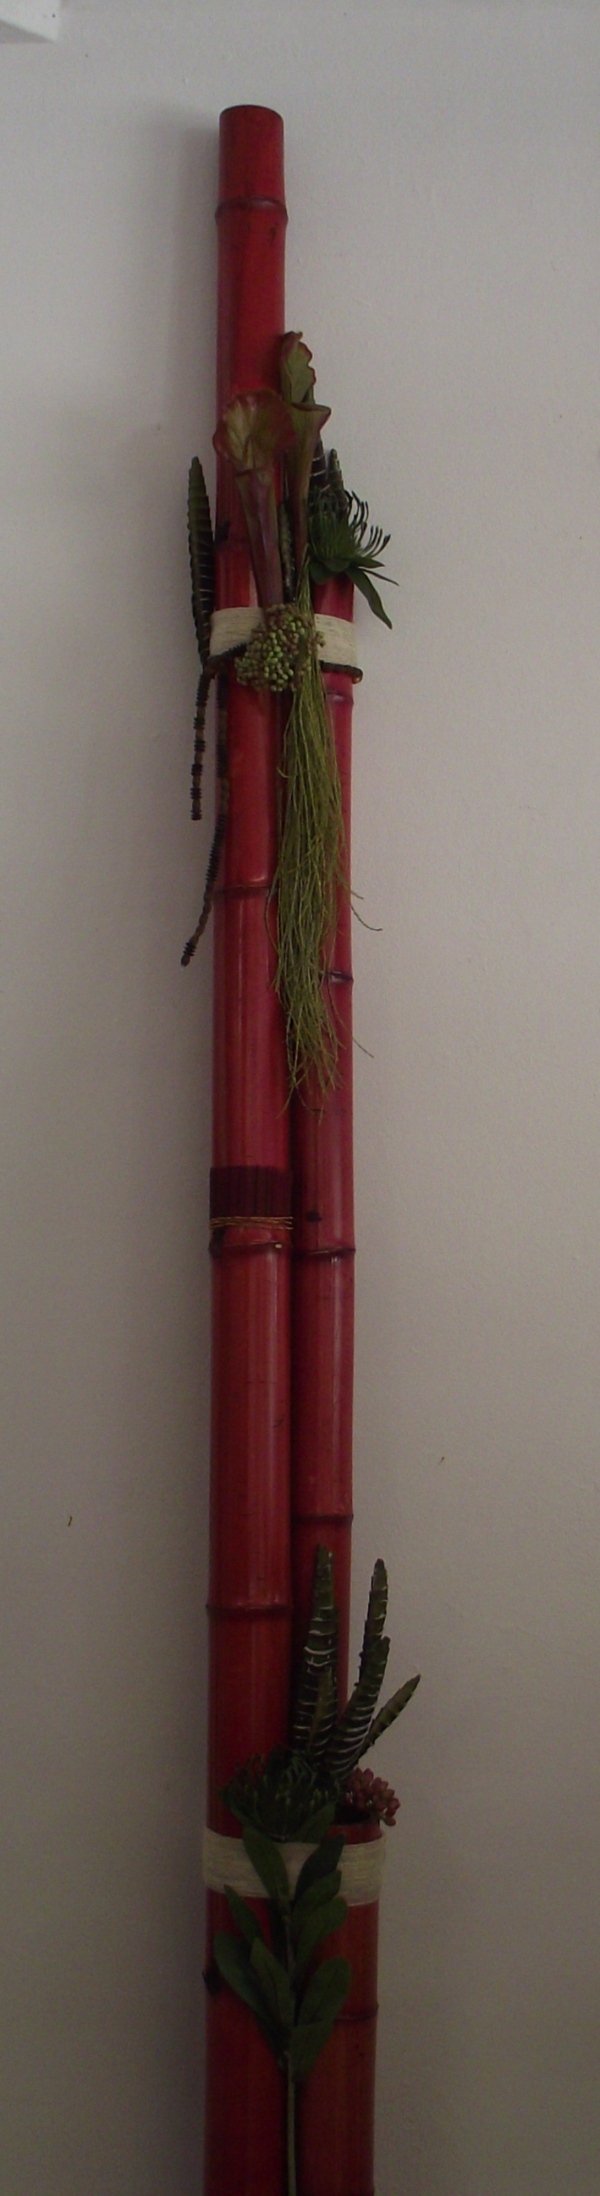 bambú, flor y telas